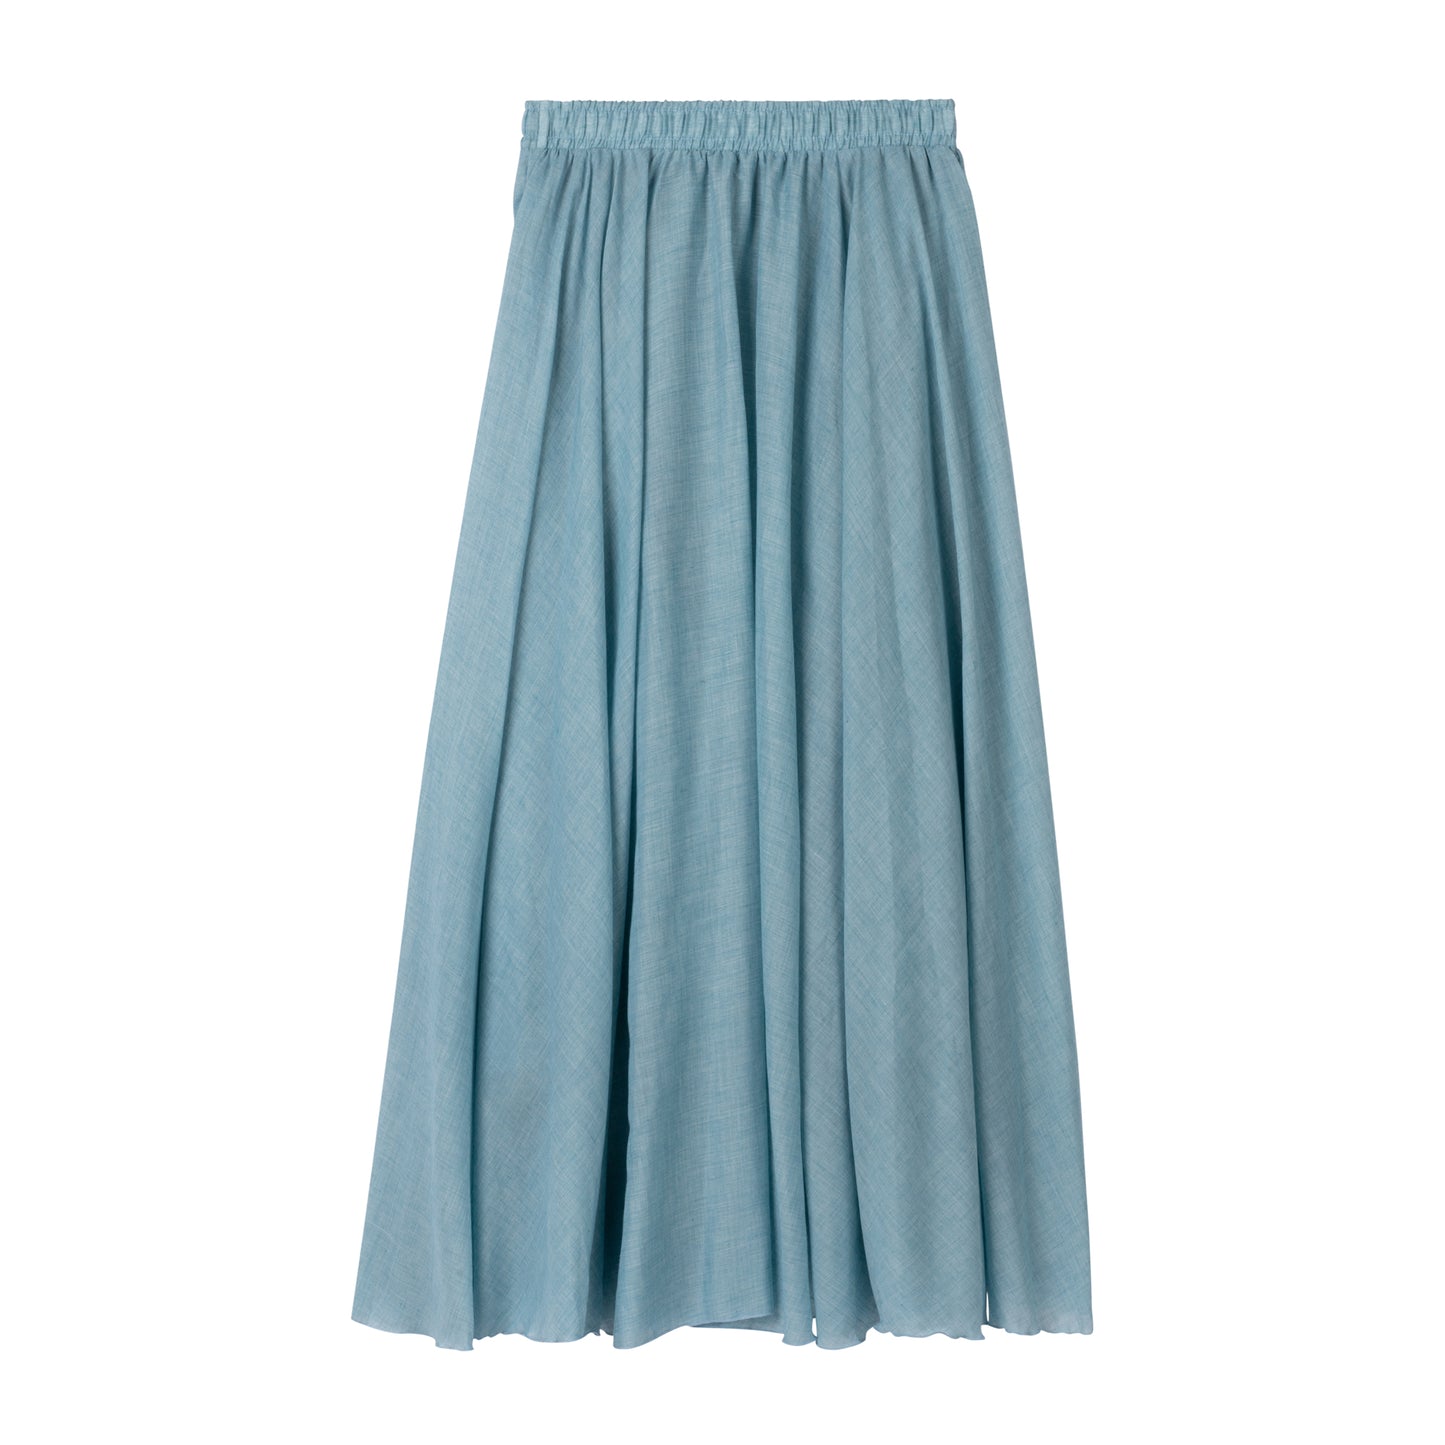 Lightweight Summer Skirt- Sky Blue